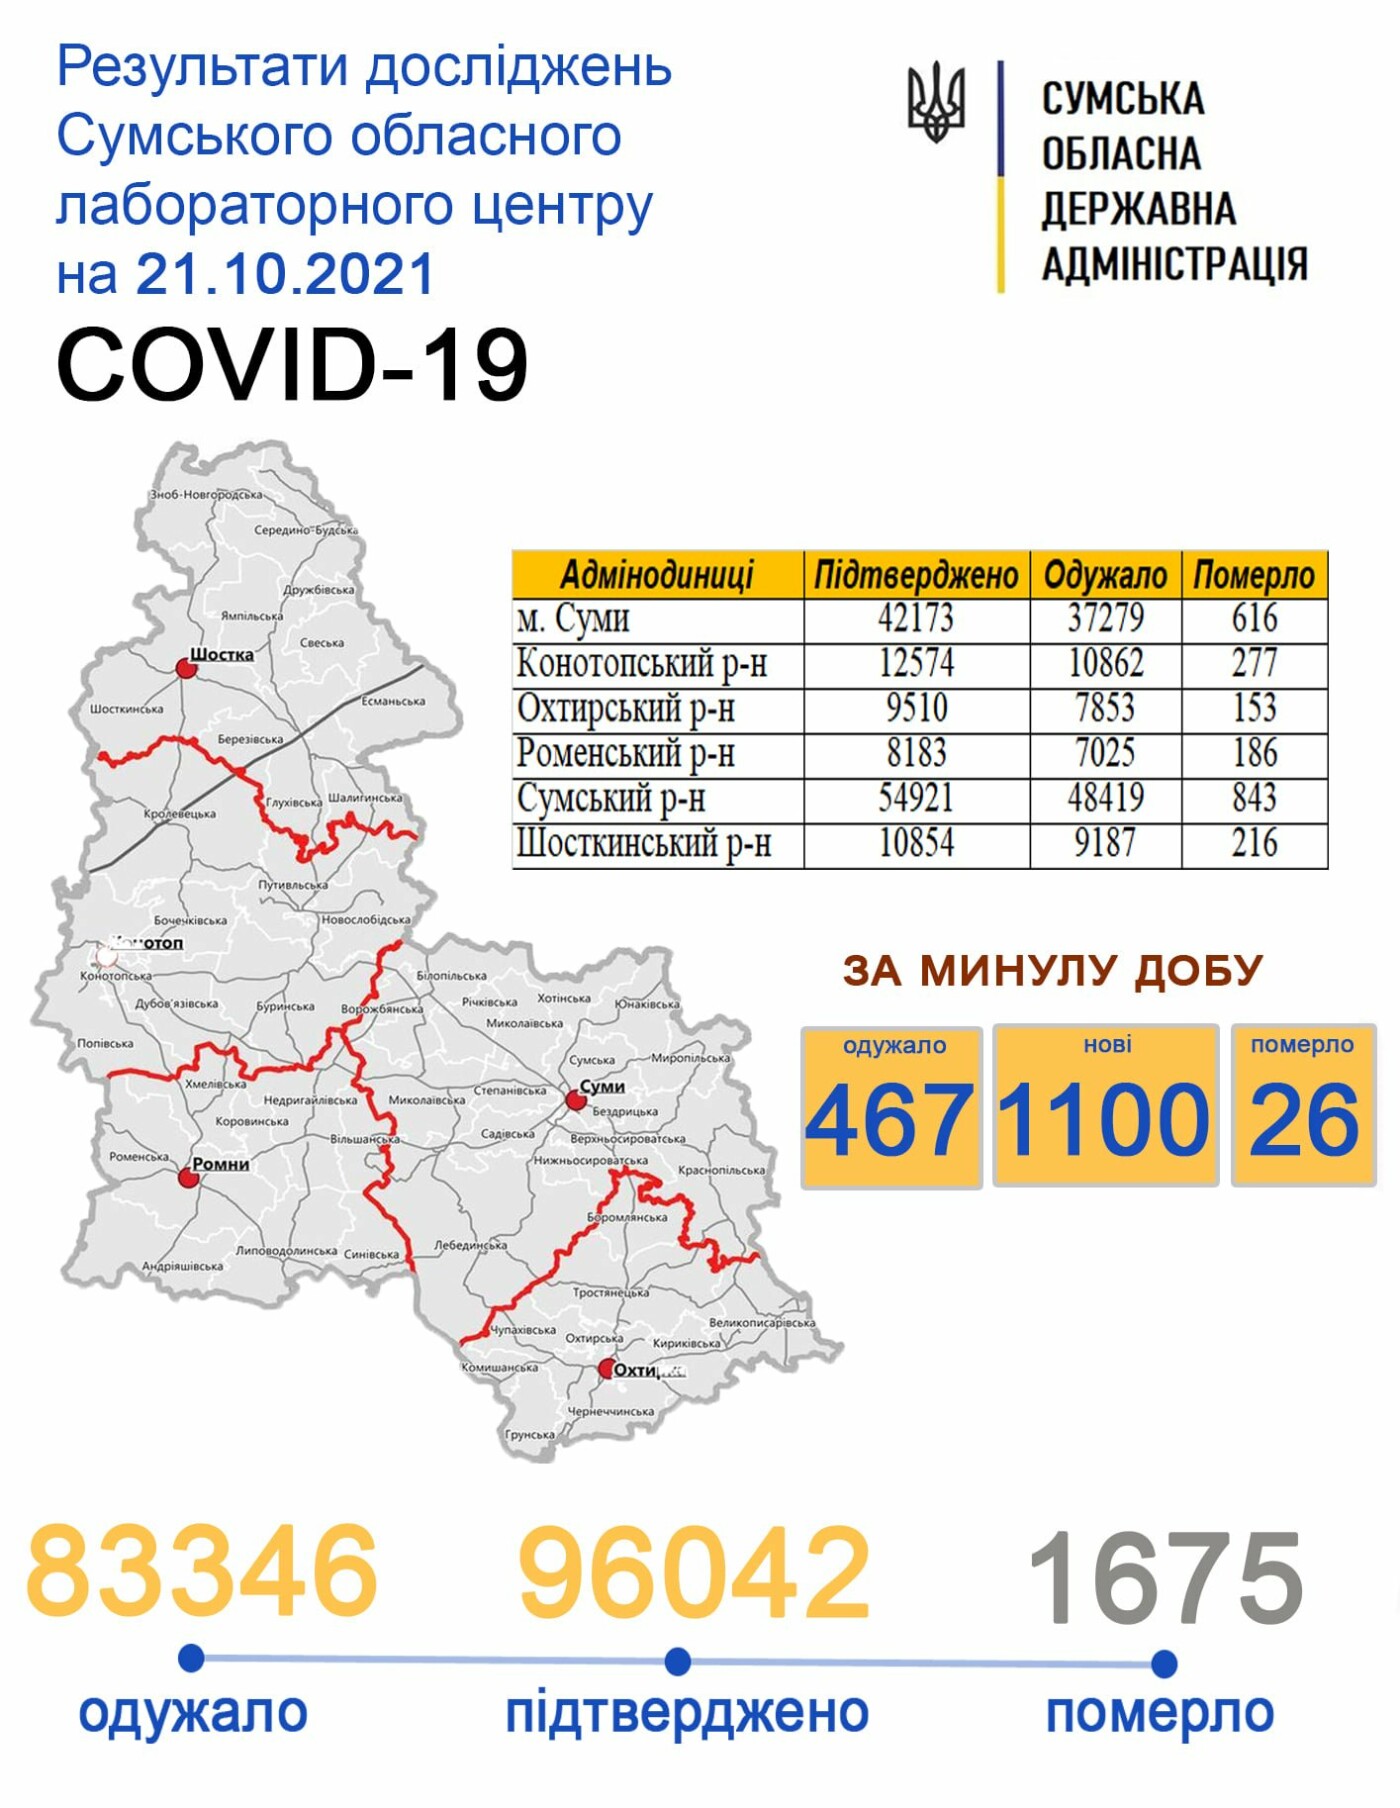    covid-19  1100  